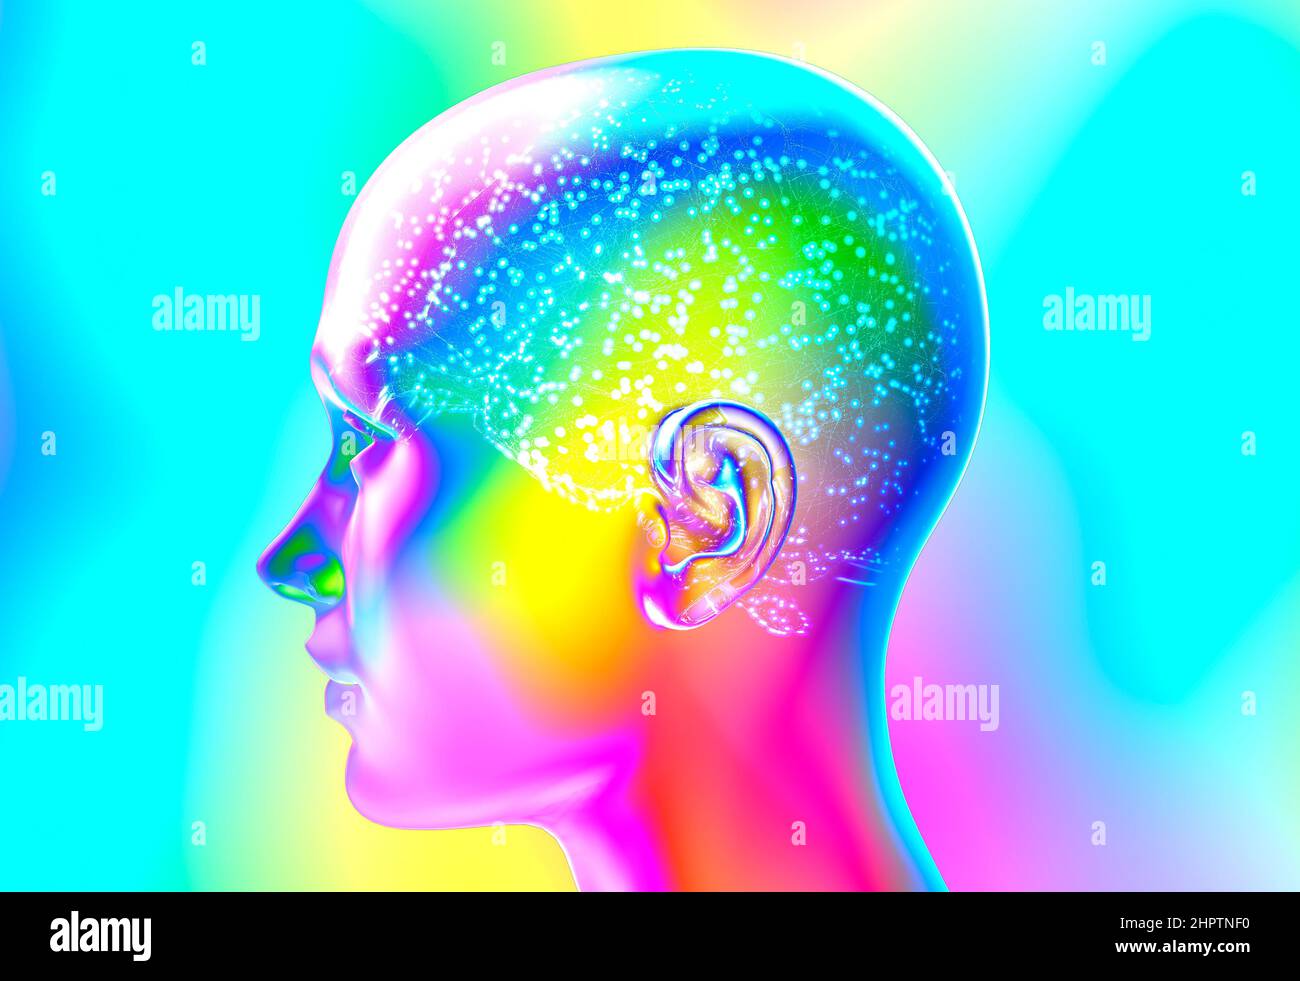 Neurologia, filosofia: Connessioni, sviluppo del pensiero e della riflessione, possibilità infinite del cervello e della mente. Anatomia umana Foto Stock